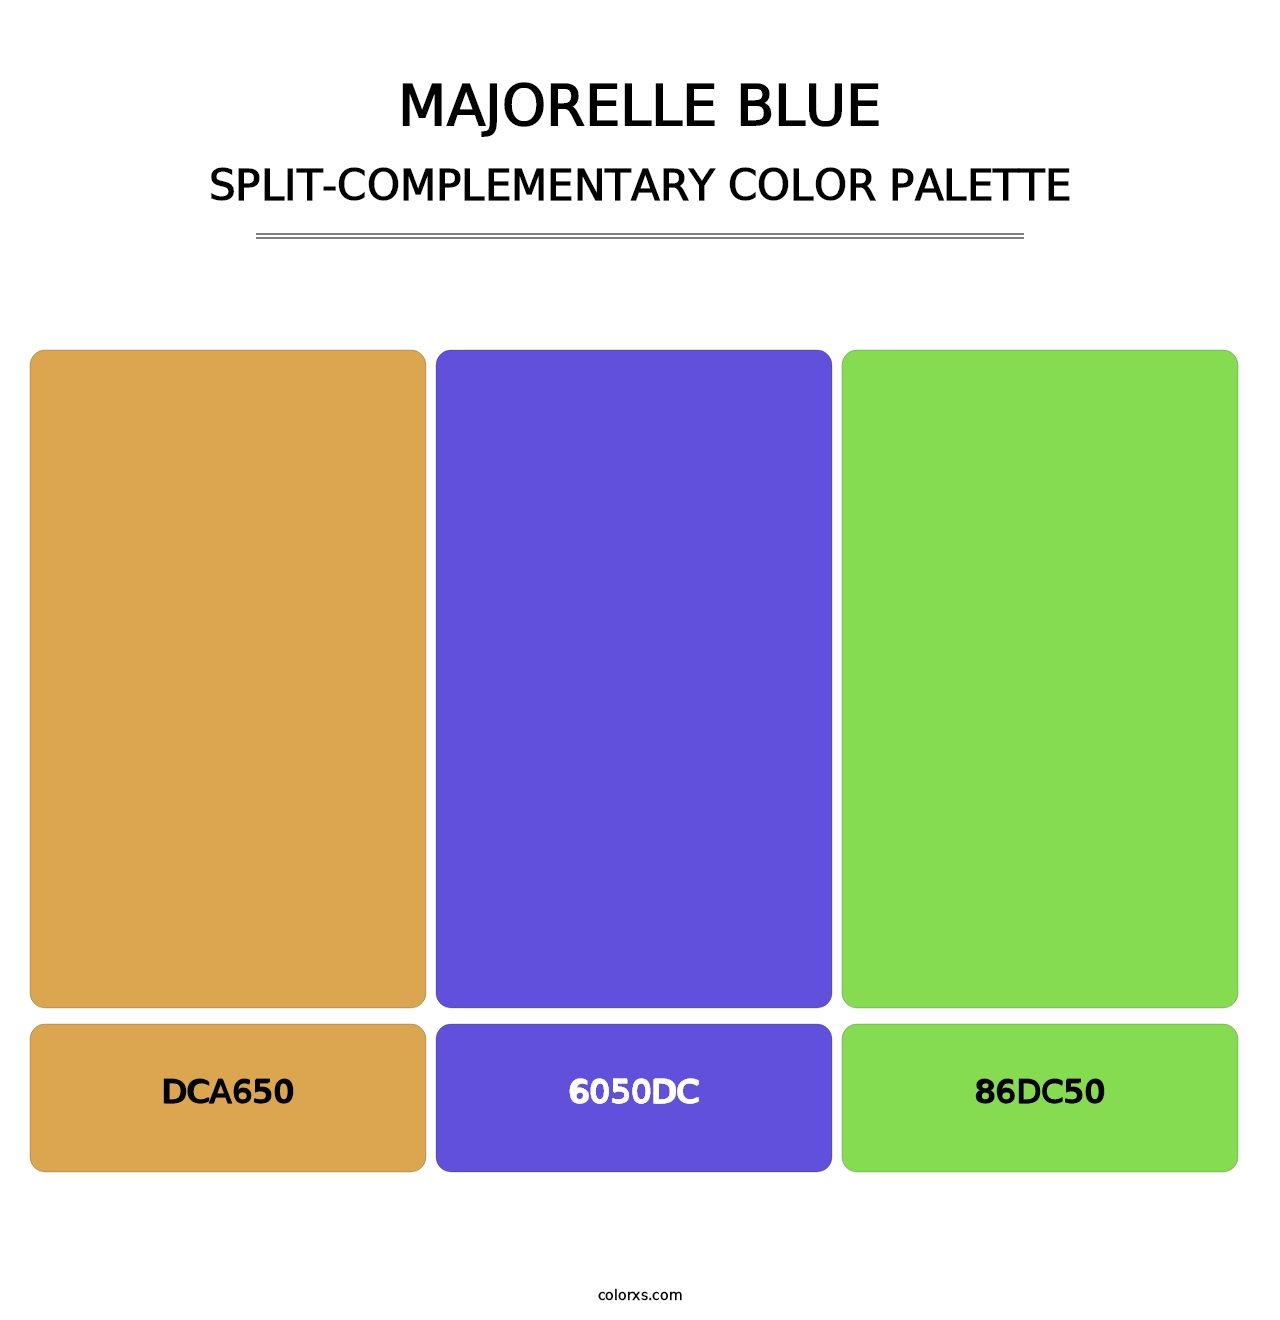 Majorelle Blue - Split-Complementary Color Palette